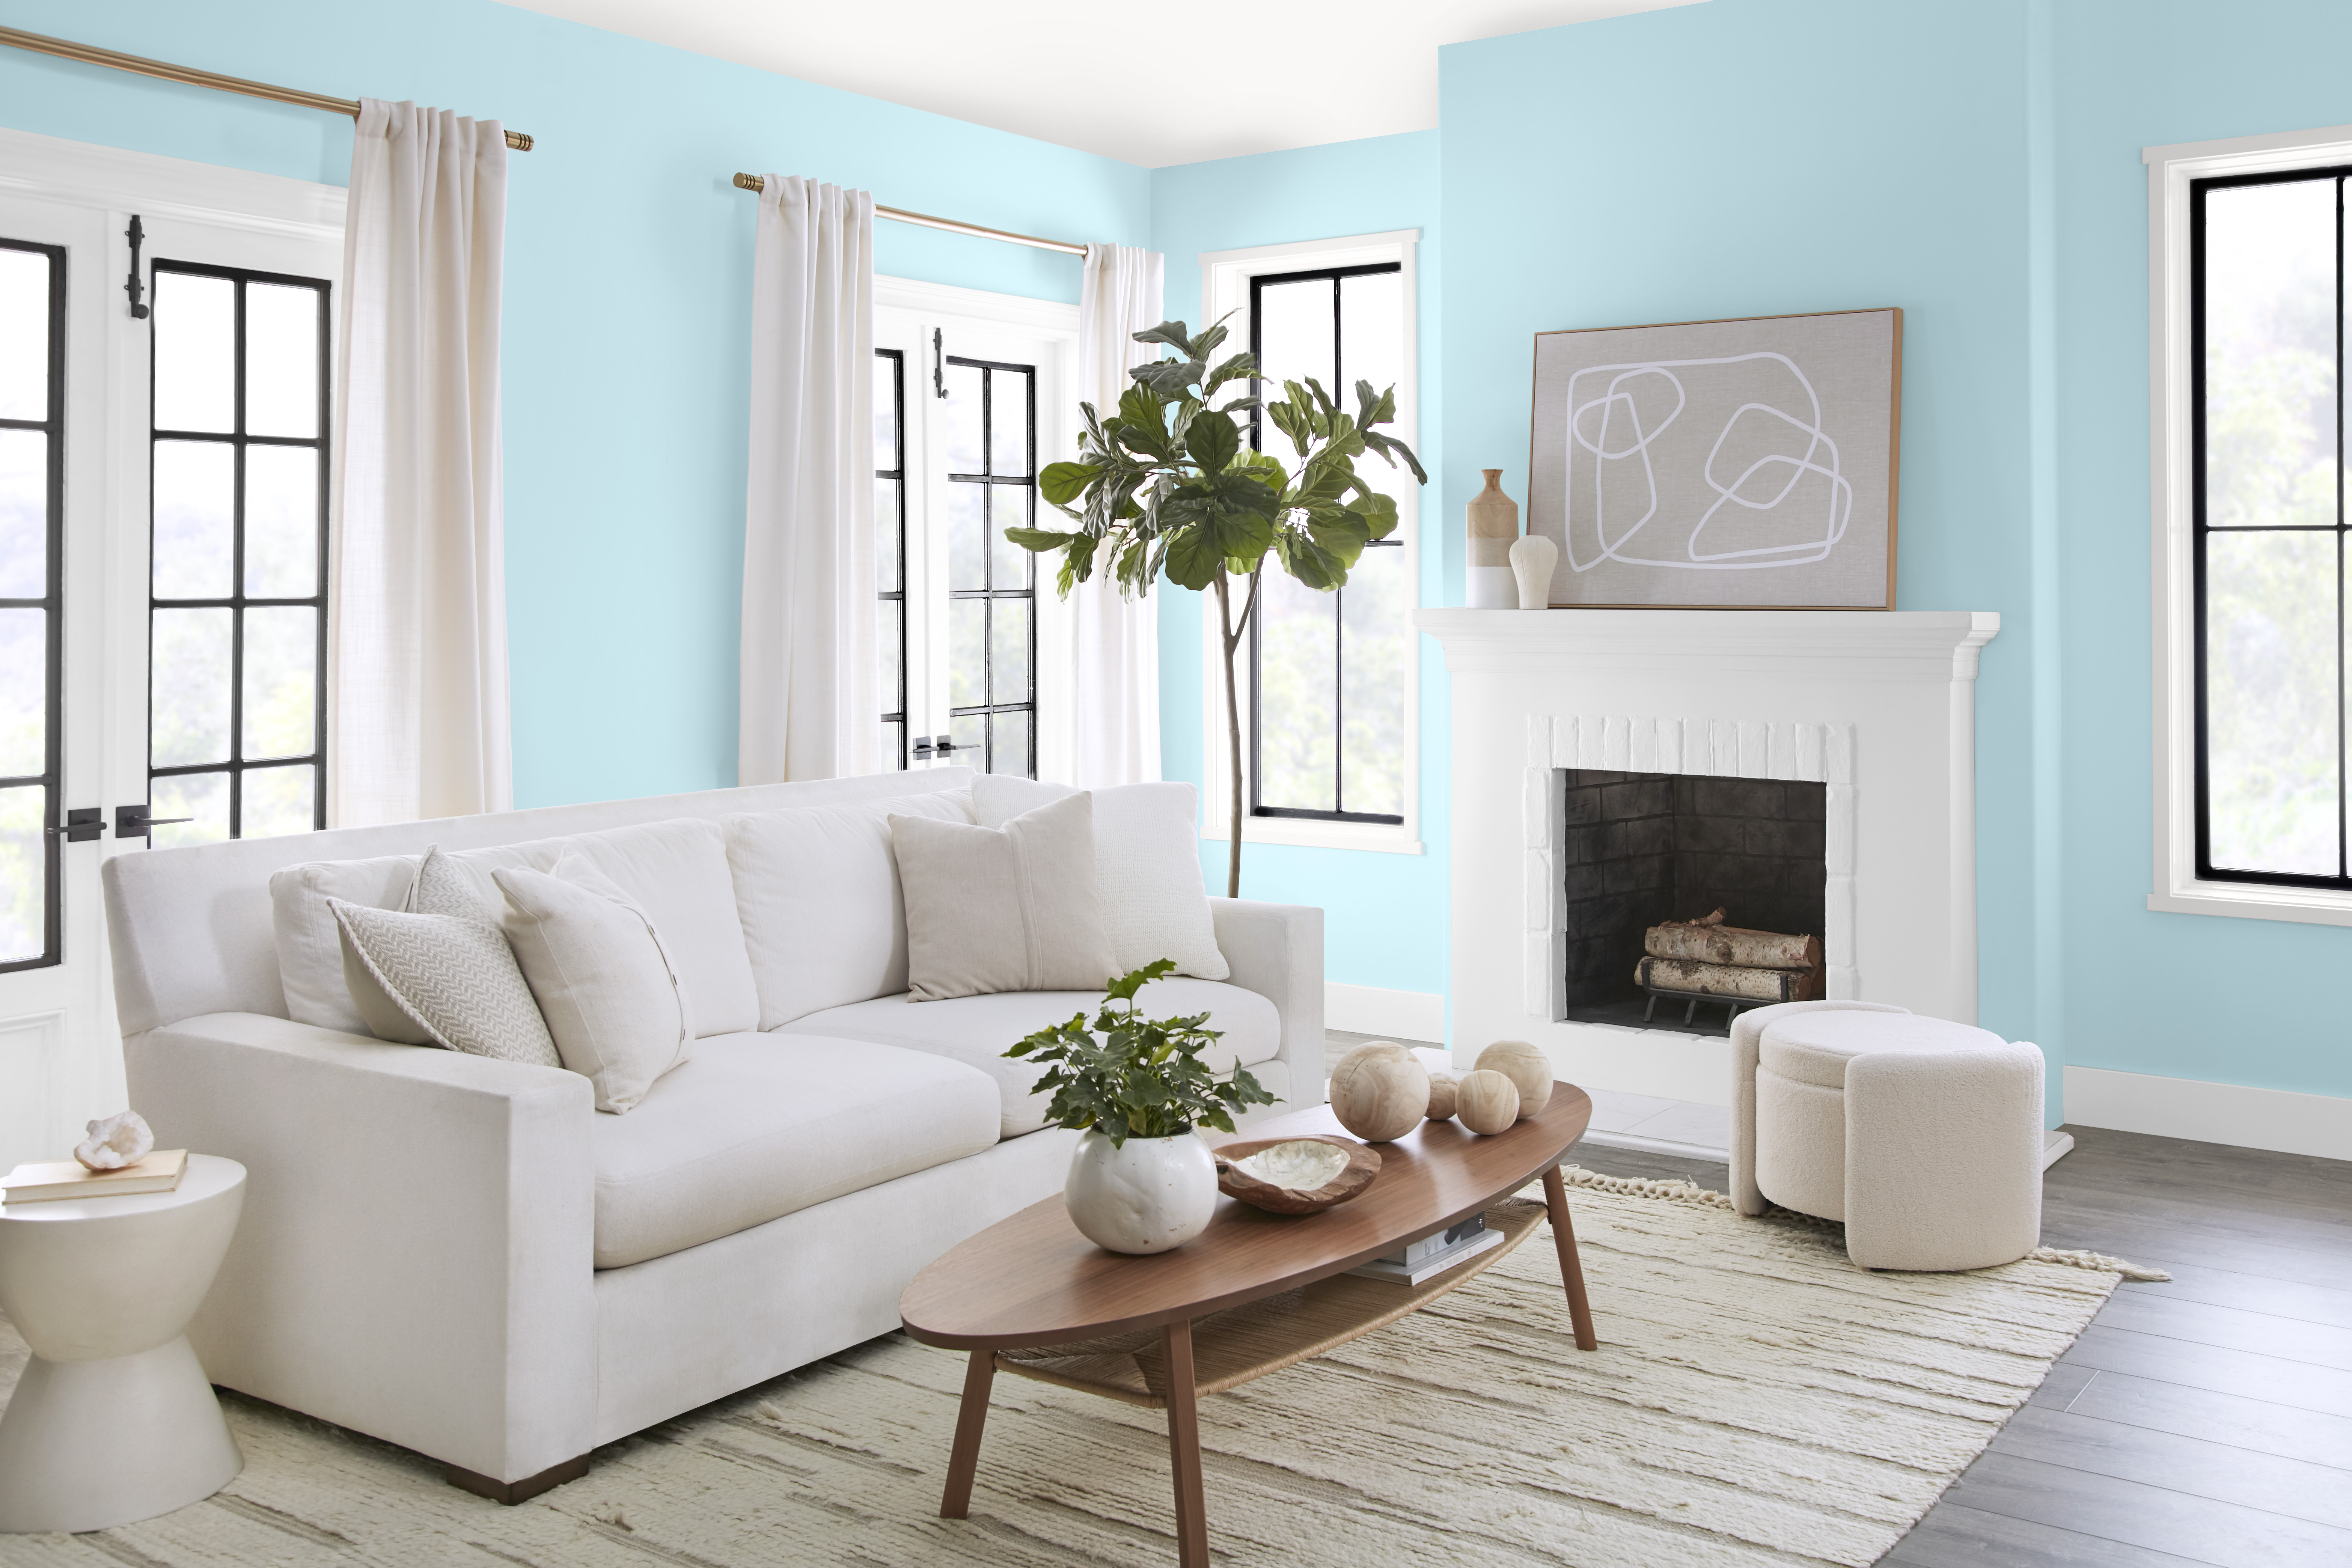 Un salon lumineux aux murs peints en bleu clair, agrémenté d'un mobilier et décor blancs et neutres